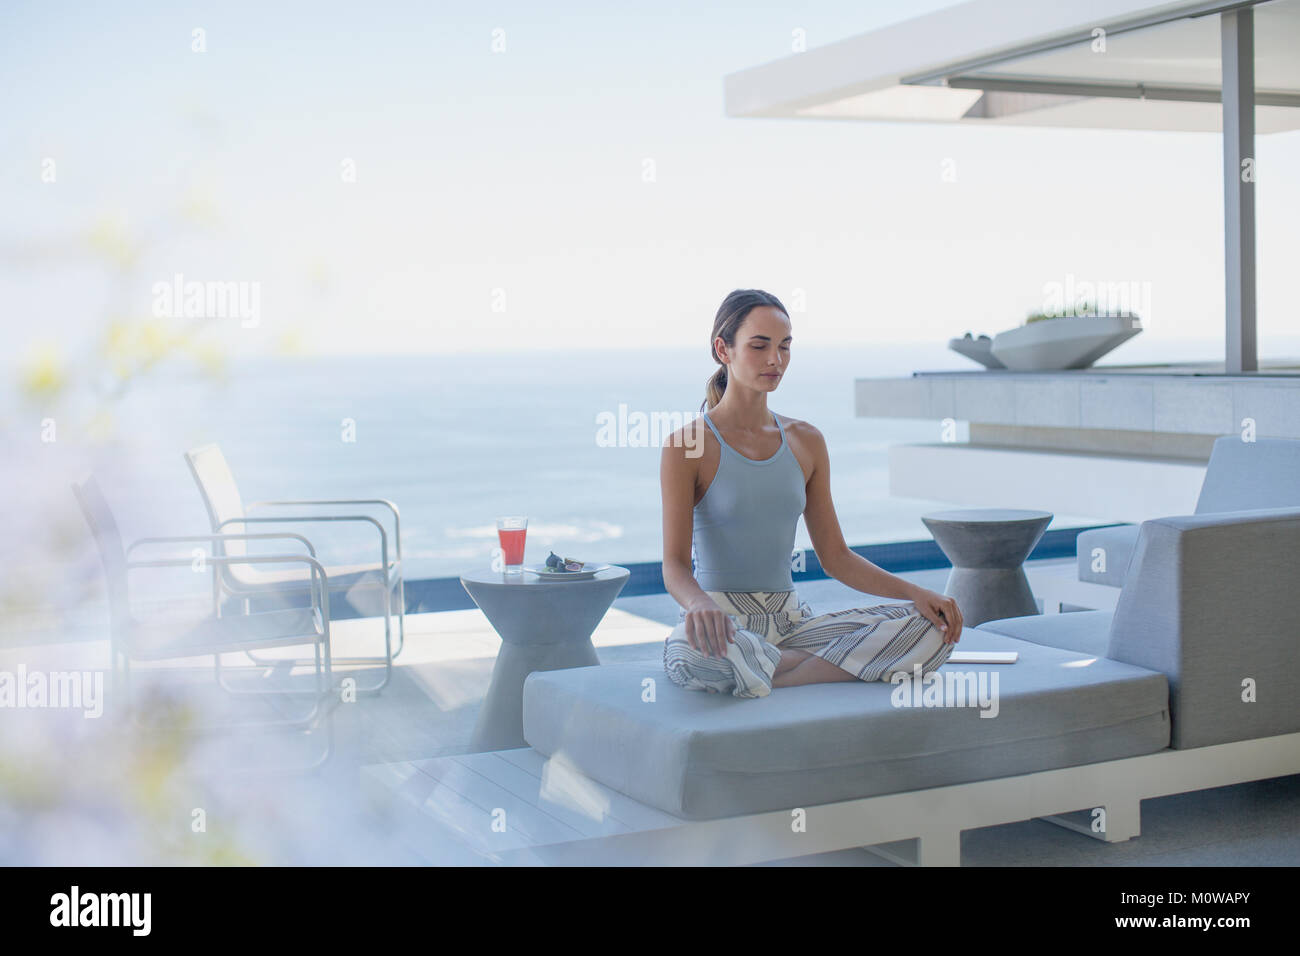 Heitere Frau Meditation im Lotussitz auf moderne, luxuriöse Home Showcase Außenbereich Terrasse Balkon mit Meerblick Stockfoto